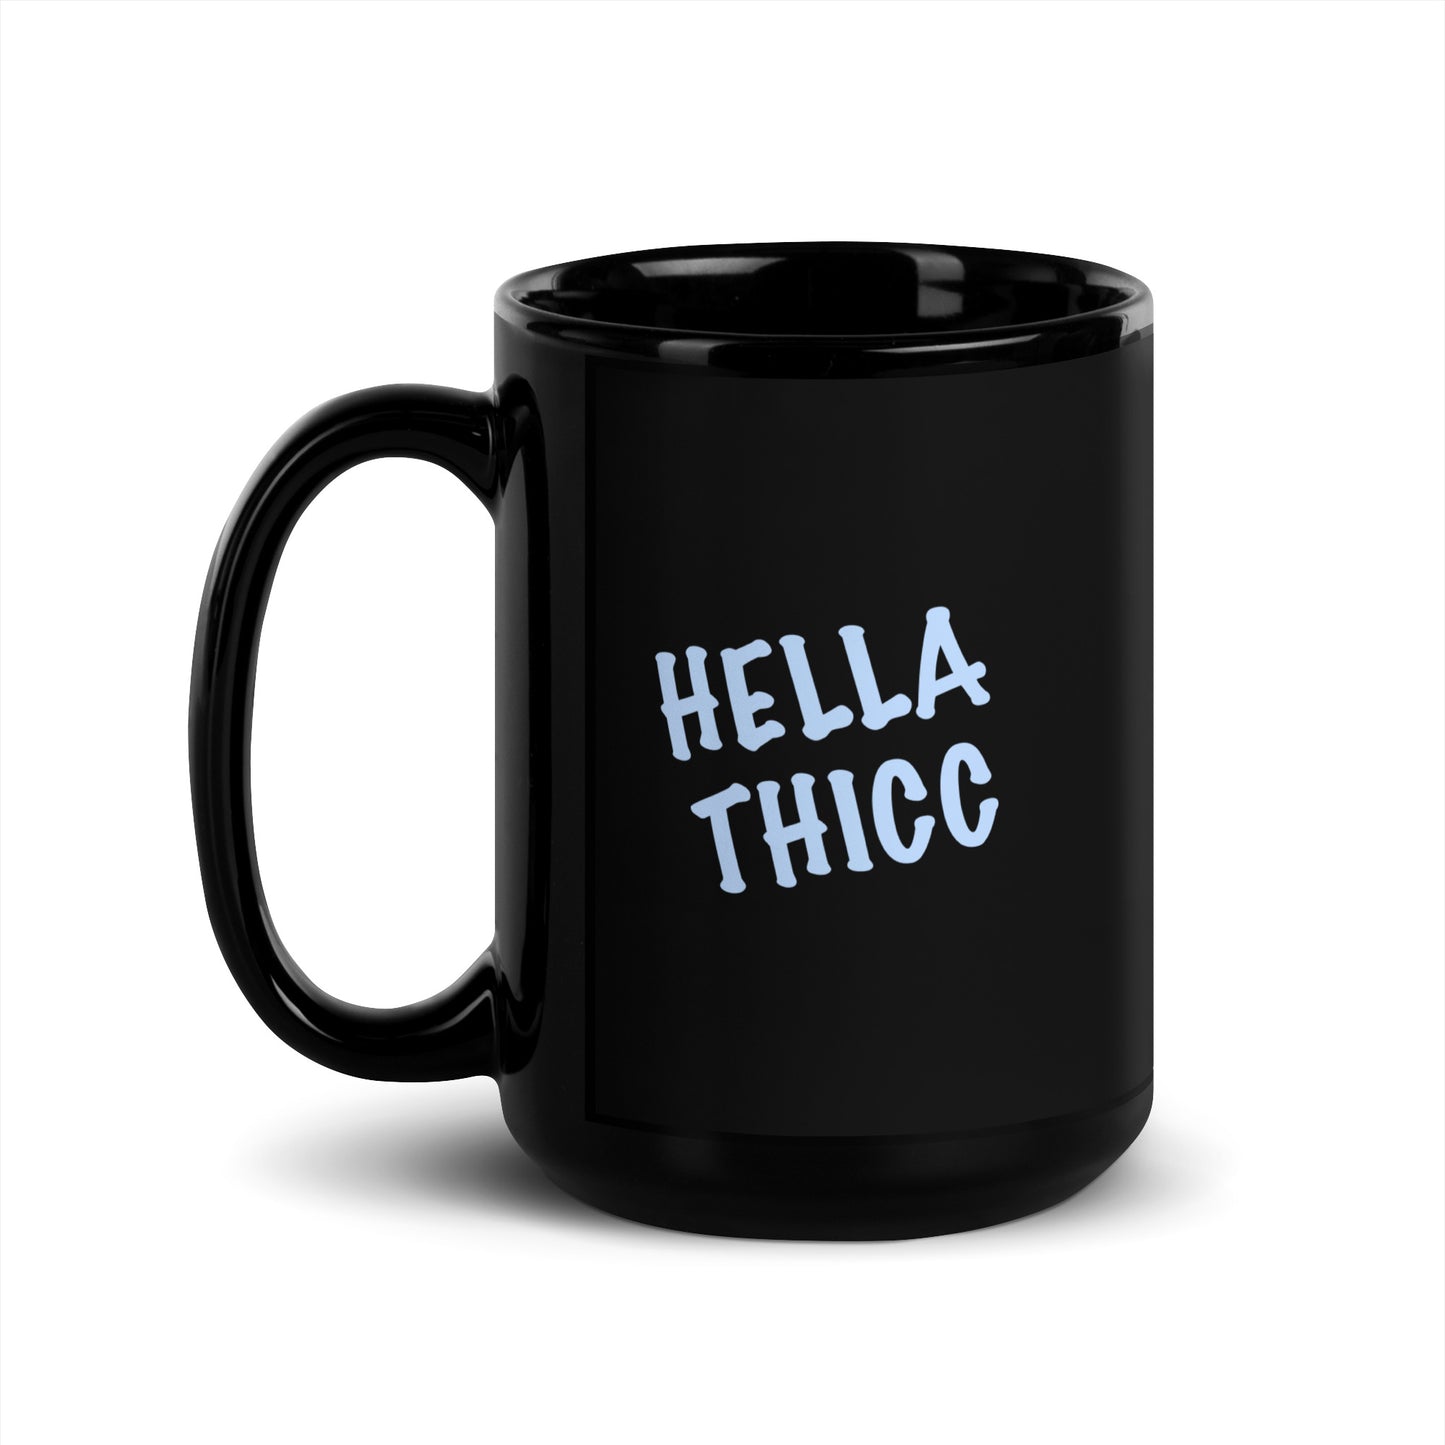 Hella Thicc Black Glossy Mug